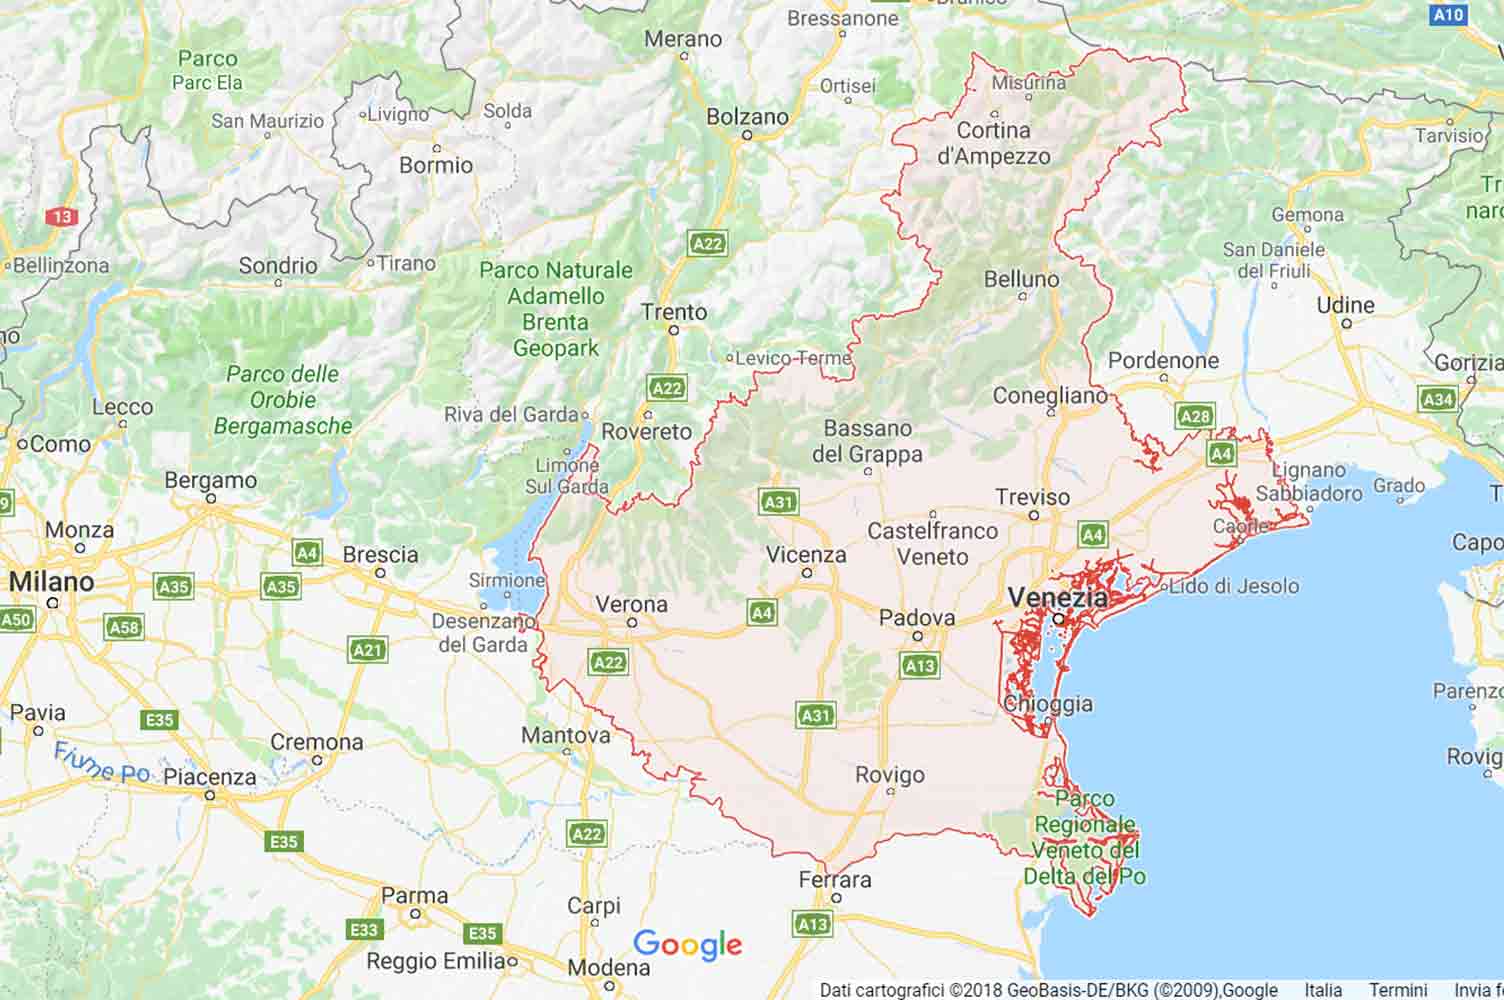 Veneto - Rovigo - San Martino di Venezze Preventivi Veloci google maps